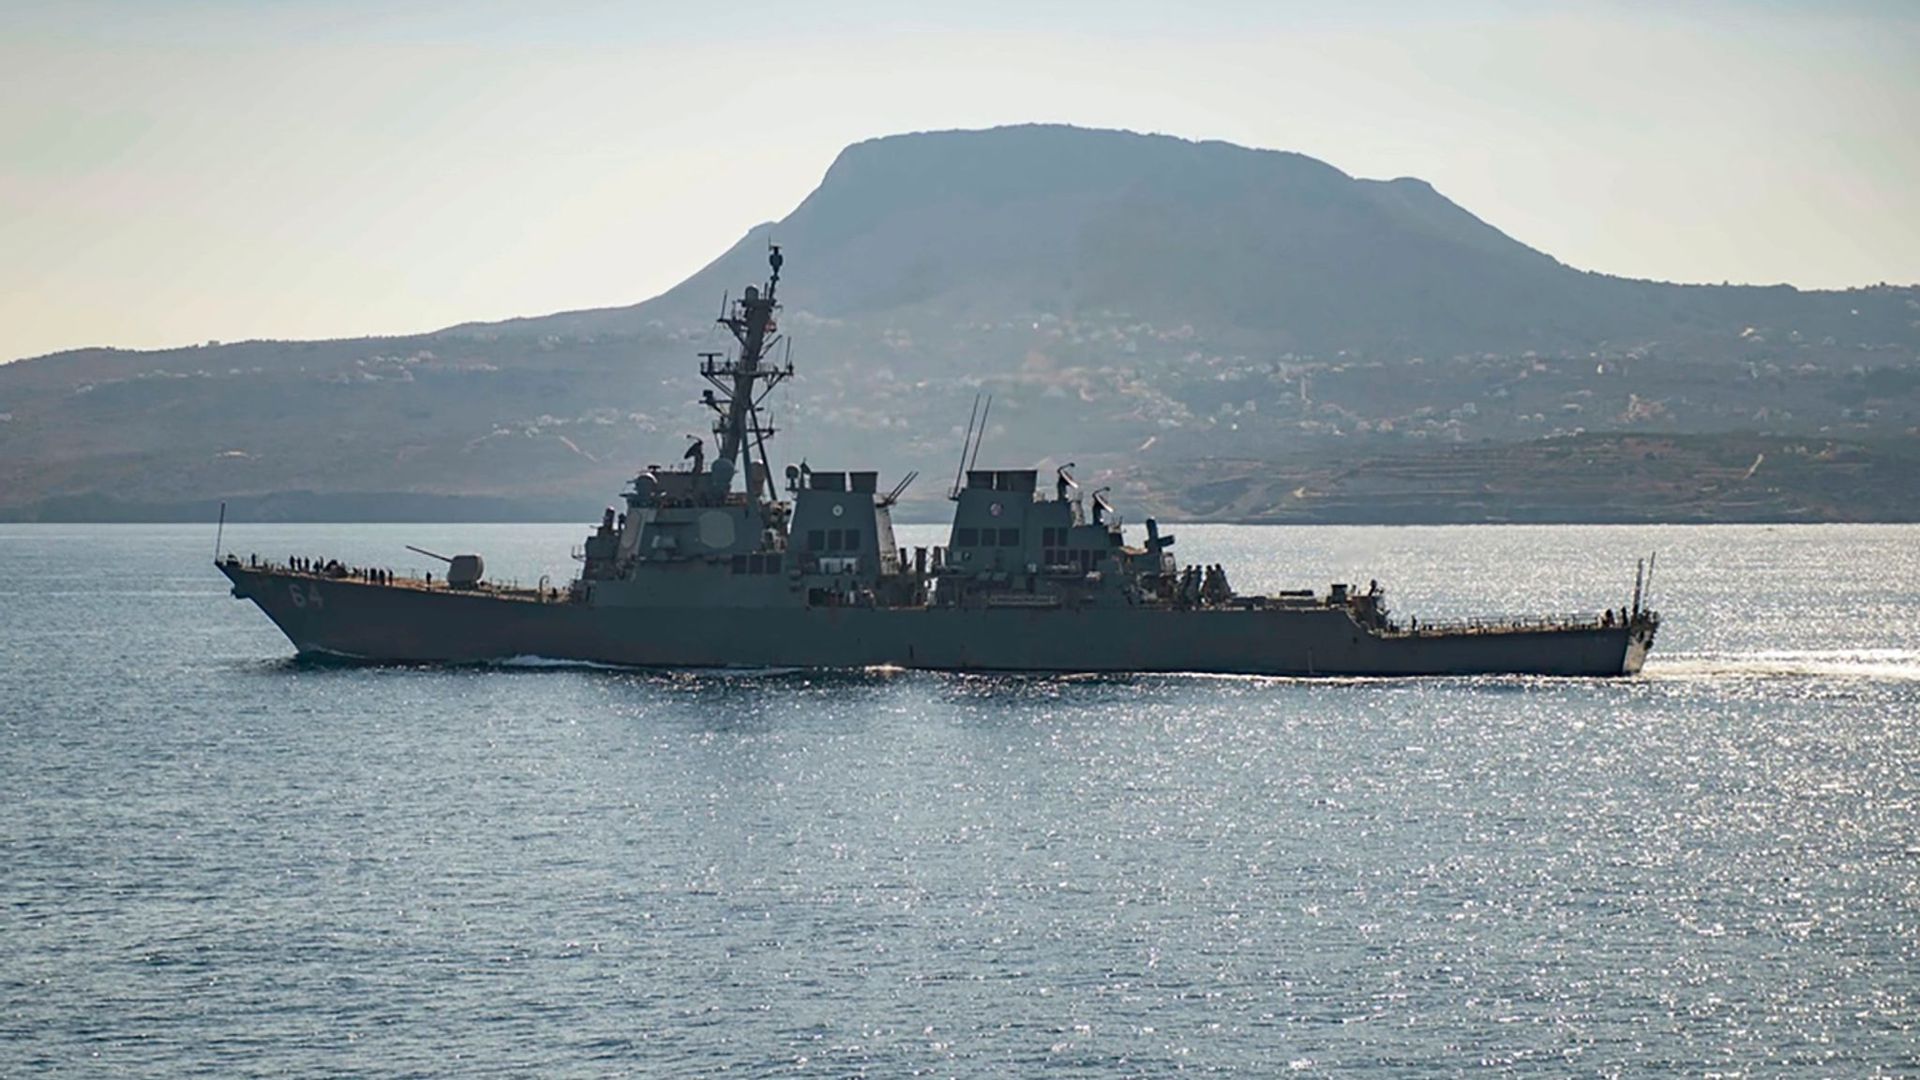 Der Marine-Zerstörer „USS Carney“ habe auf Notrufe der Frachter reagiert und Hilfe geleistet, hieß es.